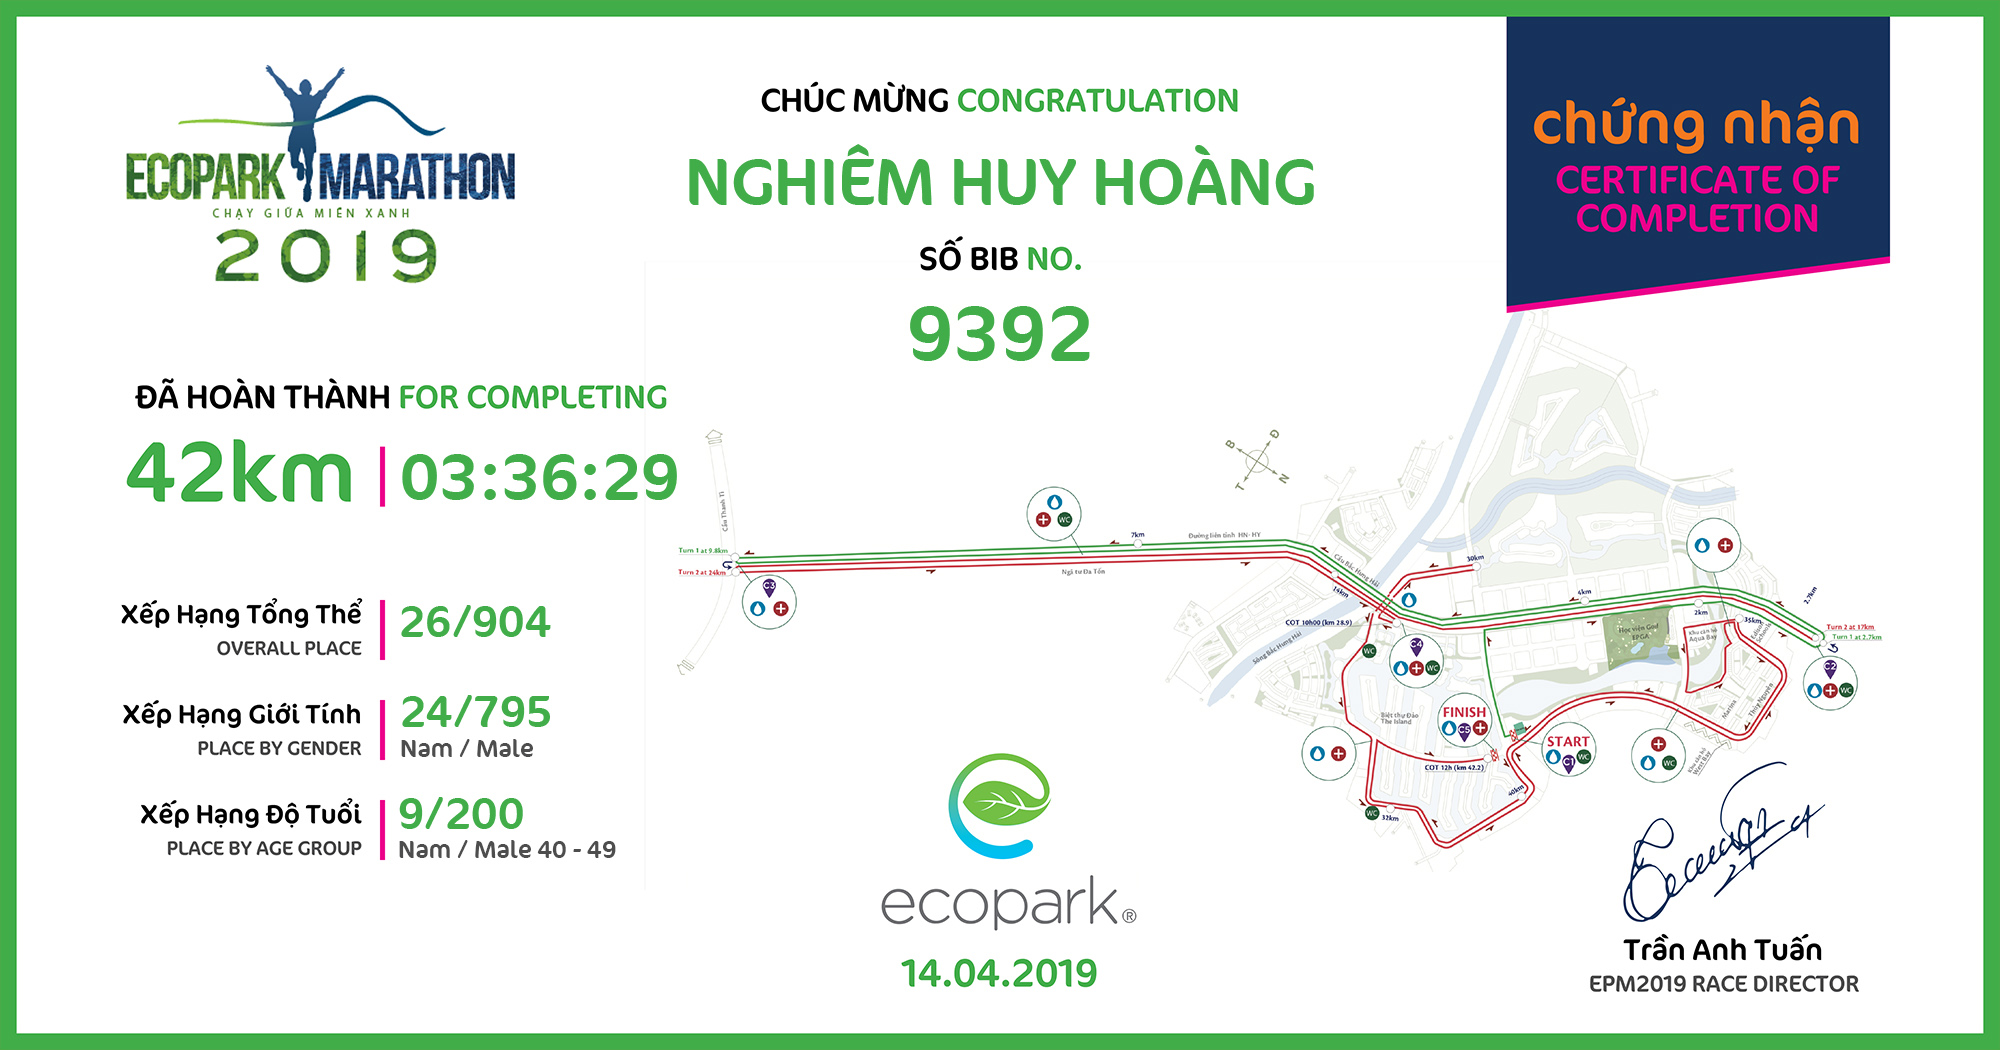 9392 - Nghiêm Huy Hoàng